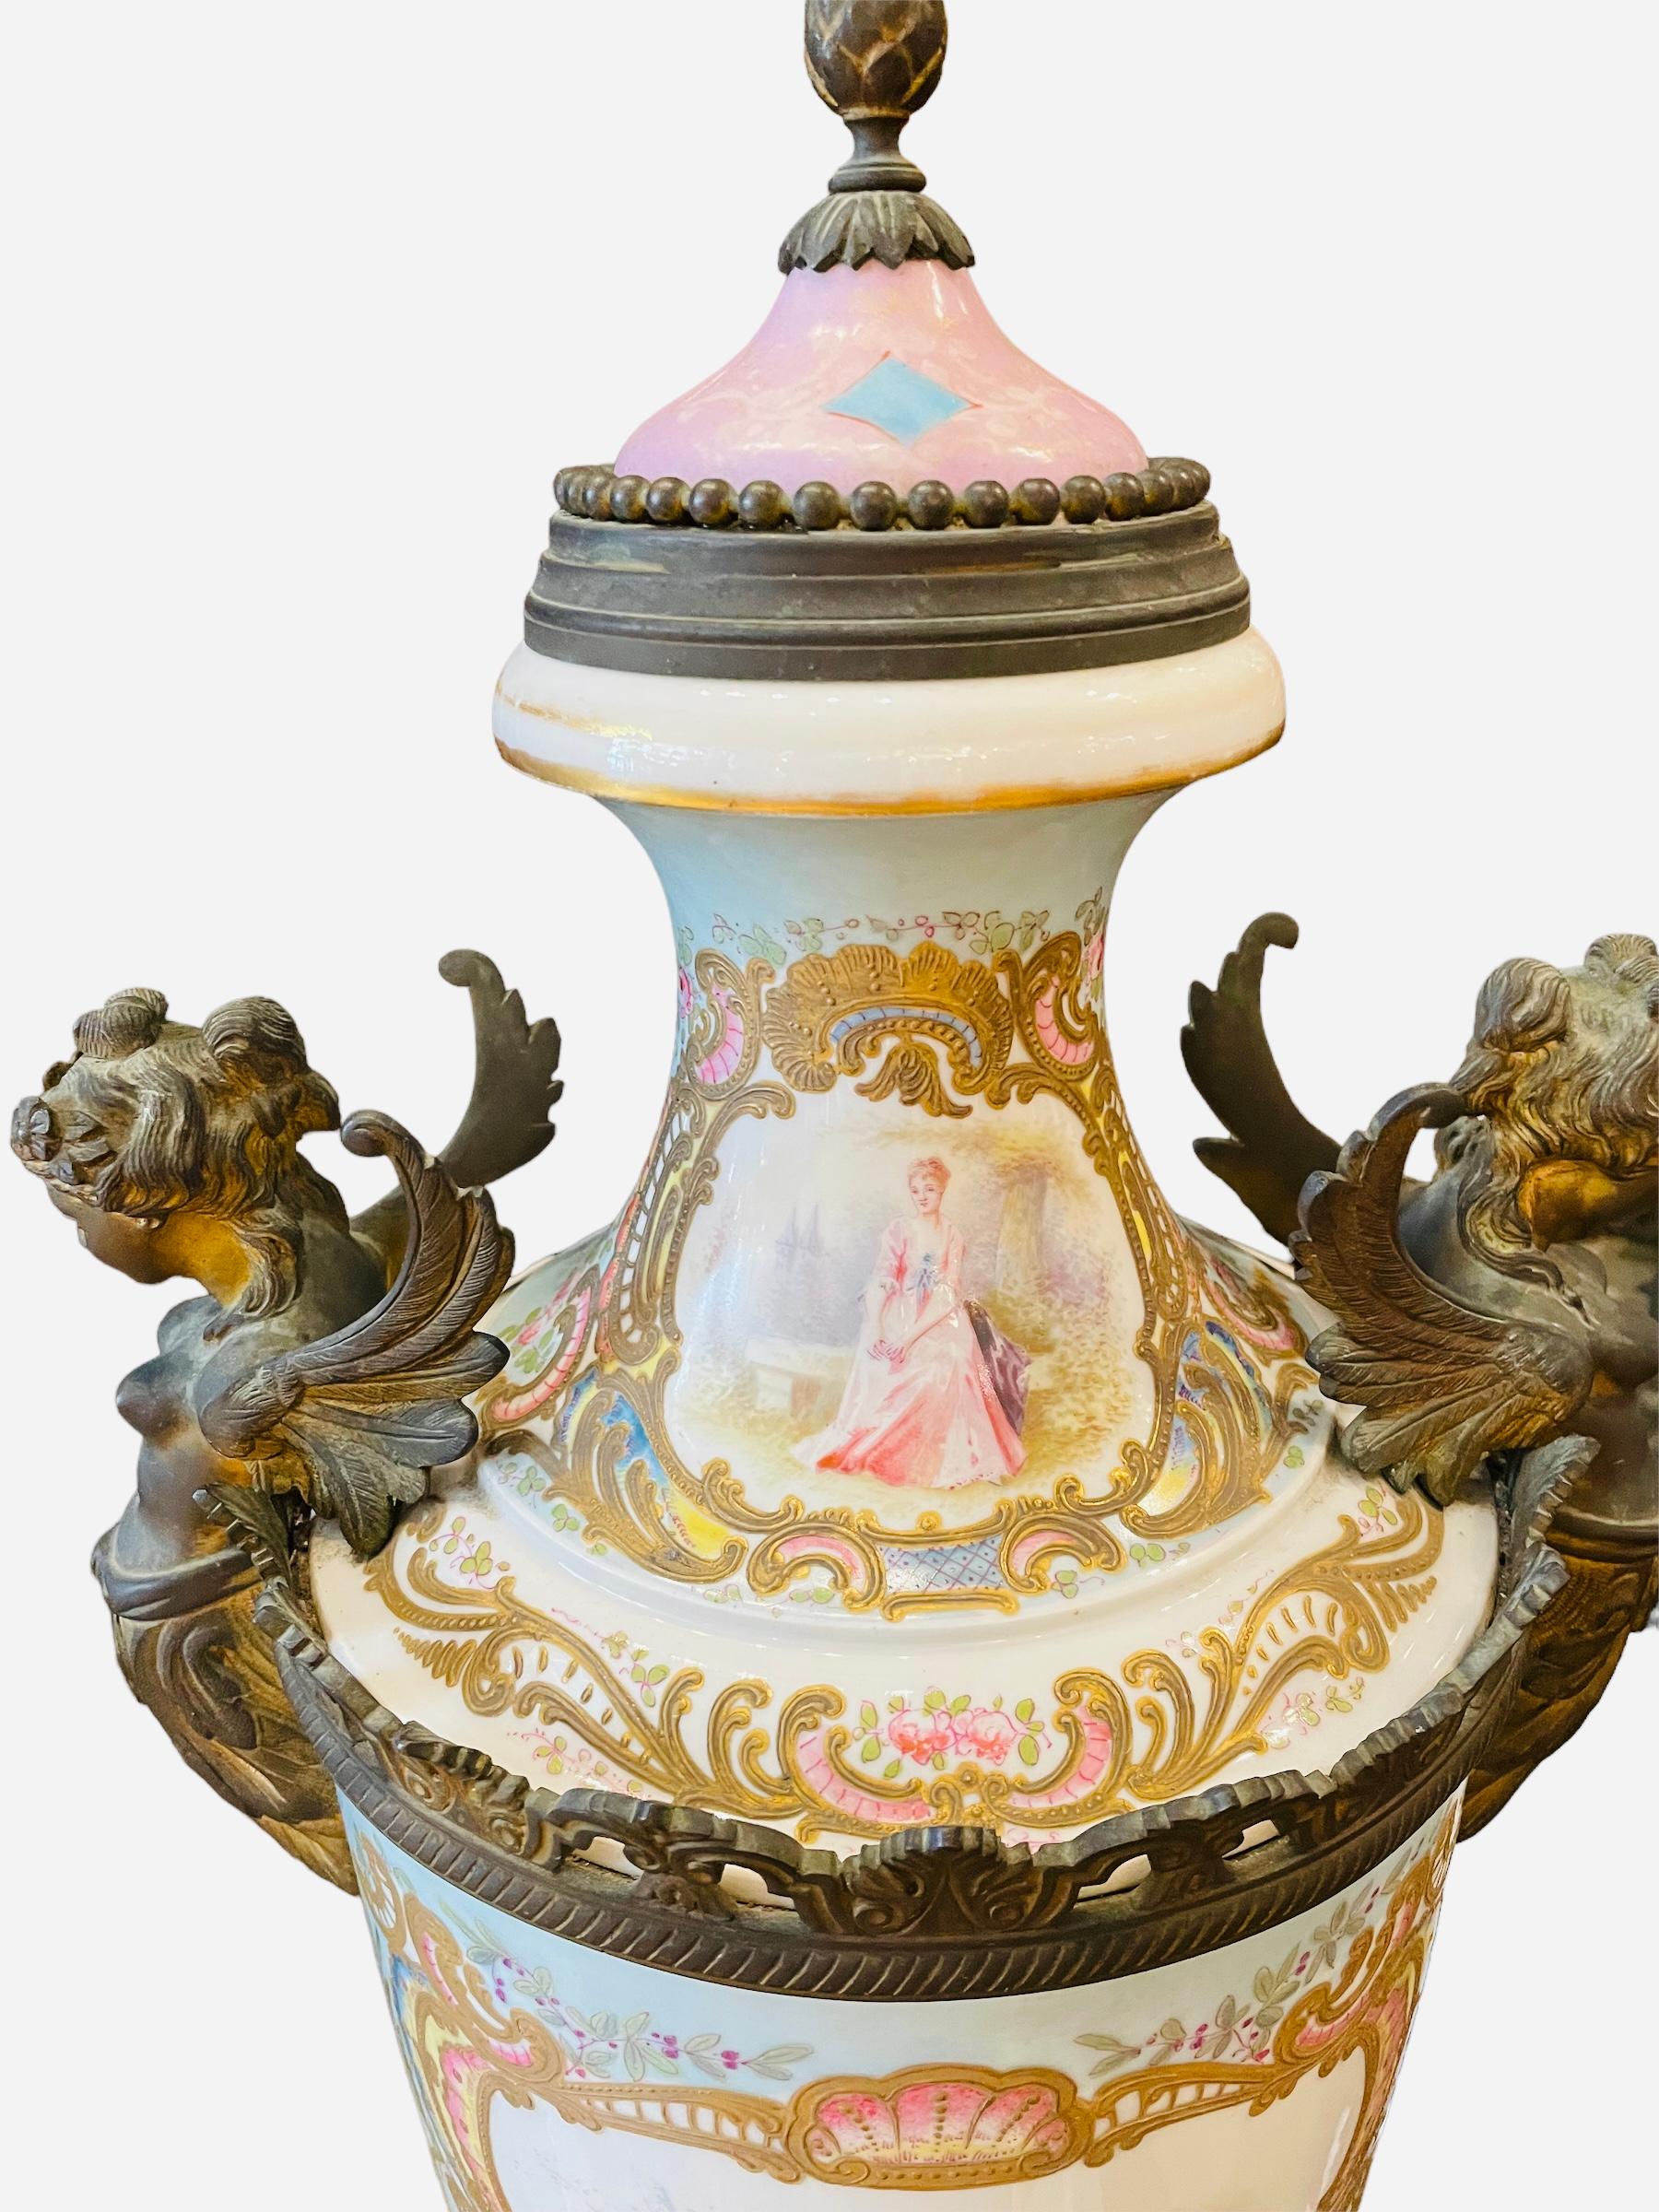 Il s'agit d'une grande et lourde urne à couvercle en porcelaine montée sur bronze patiné de style Sèvres. Il est peint à la main sur fond blanc et bleu ciel. Elle représente une scène d'un gentilhomme du XVIIIe siècle saluant une dame dans la partie